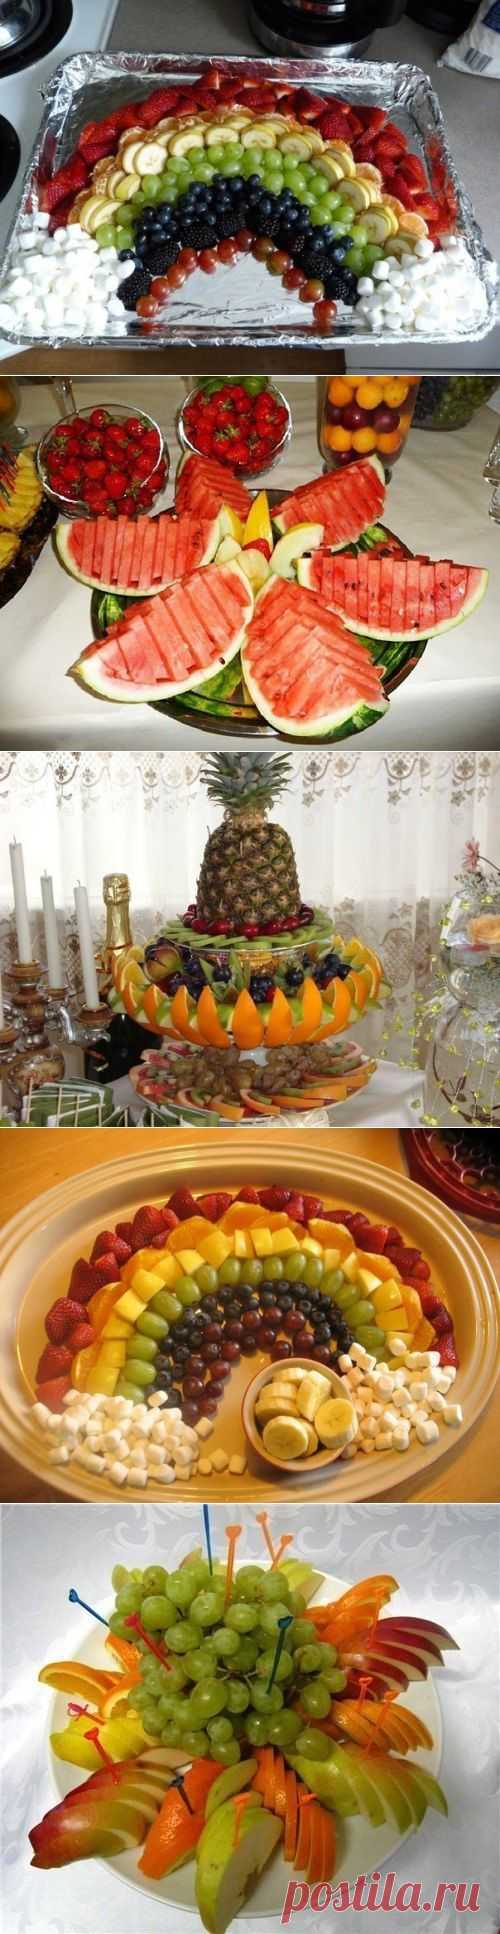 Как красиво оформить фруктовую тарелку | Готовим вместе